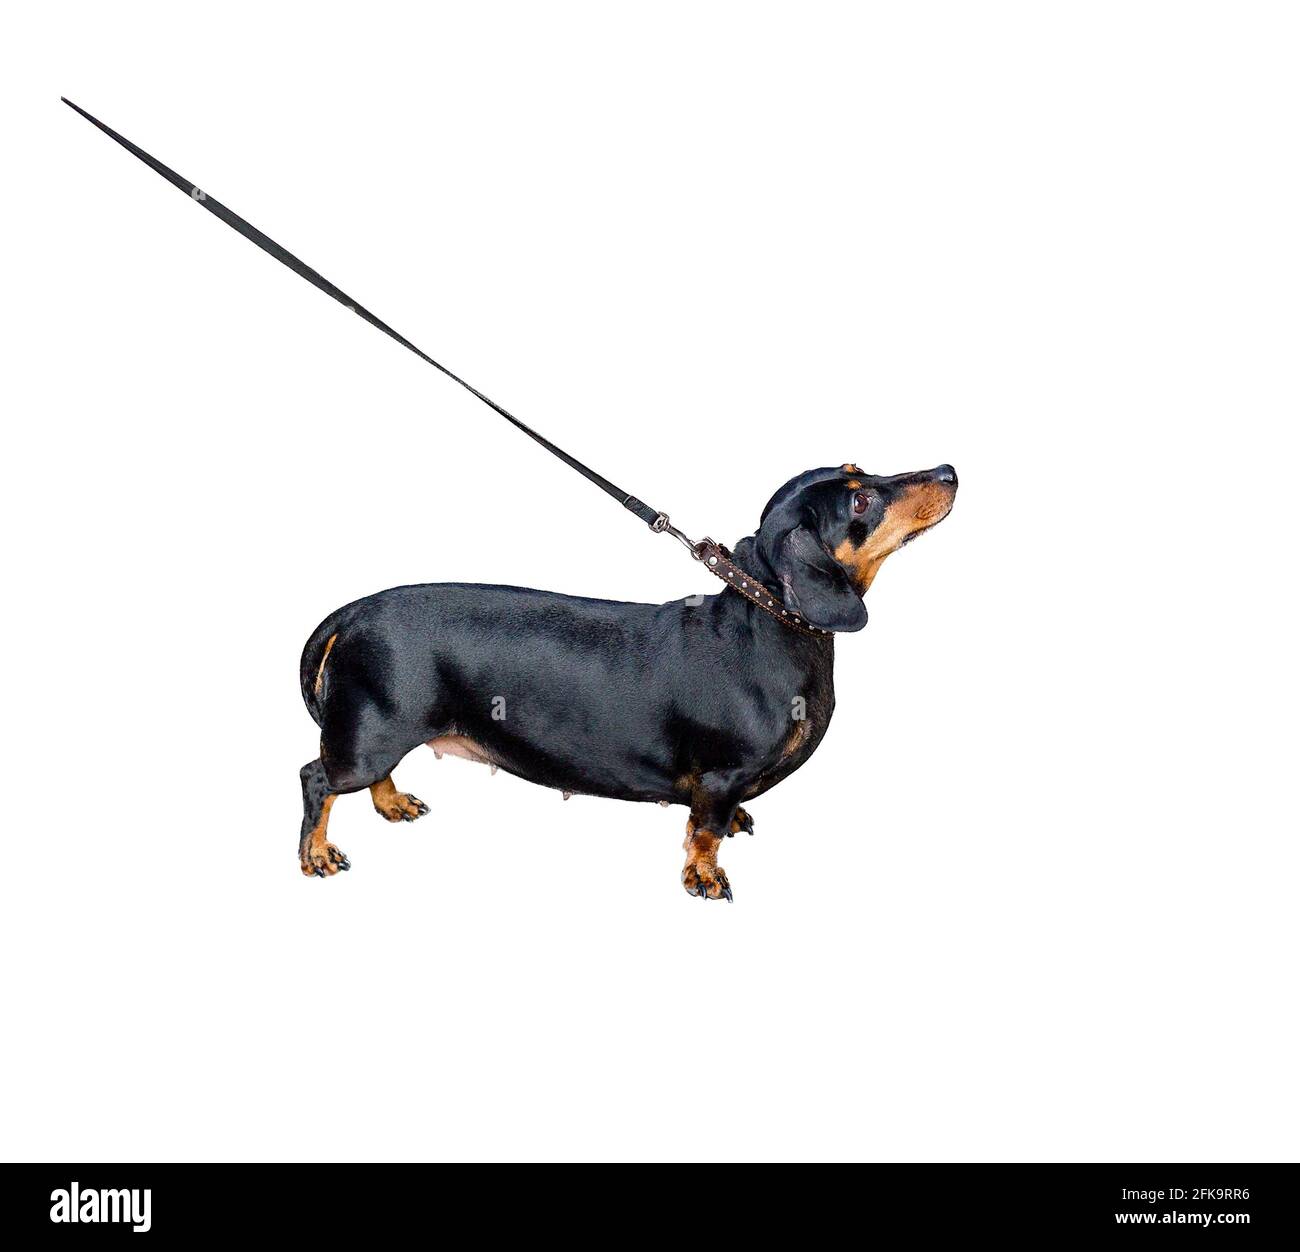 Dachshund on leash isolated on white background. Stock Photo